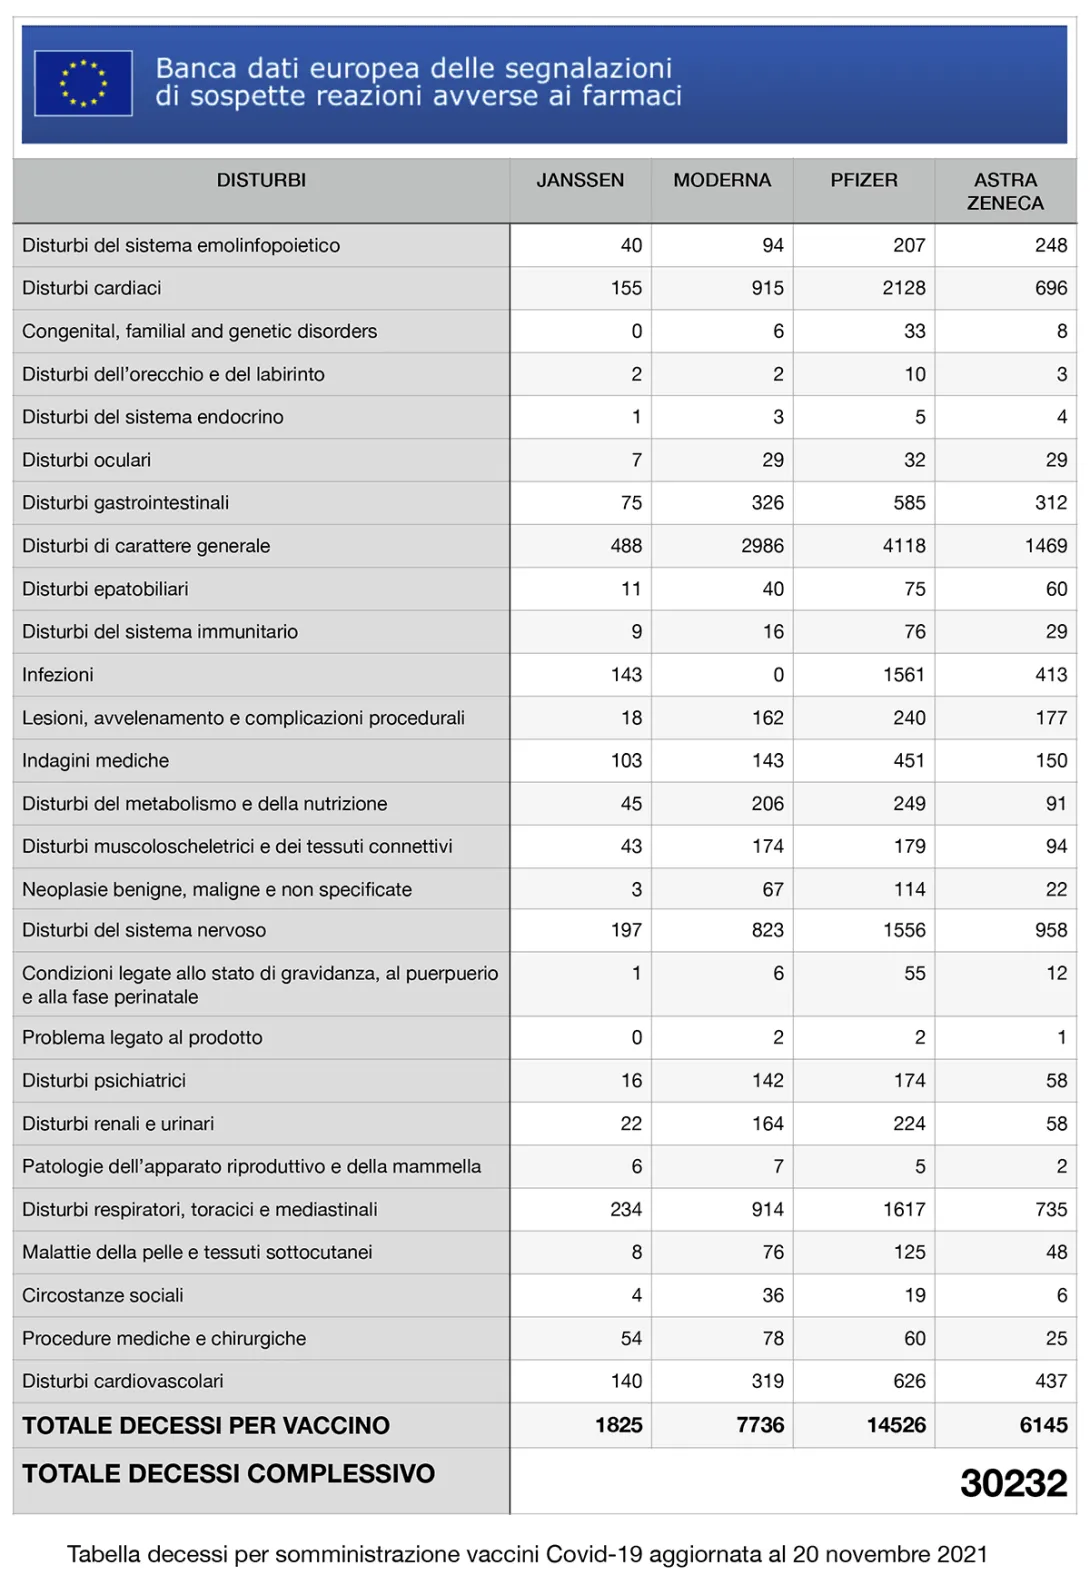 EMA, tabella decessi per tipo di vaccino